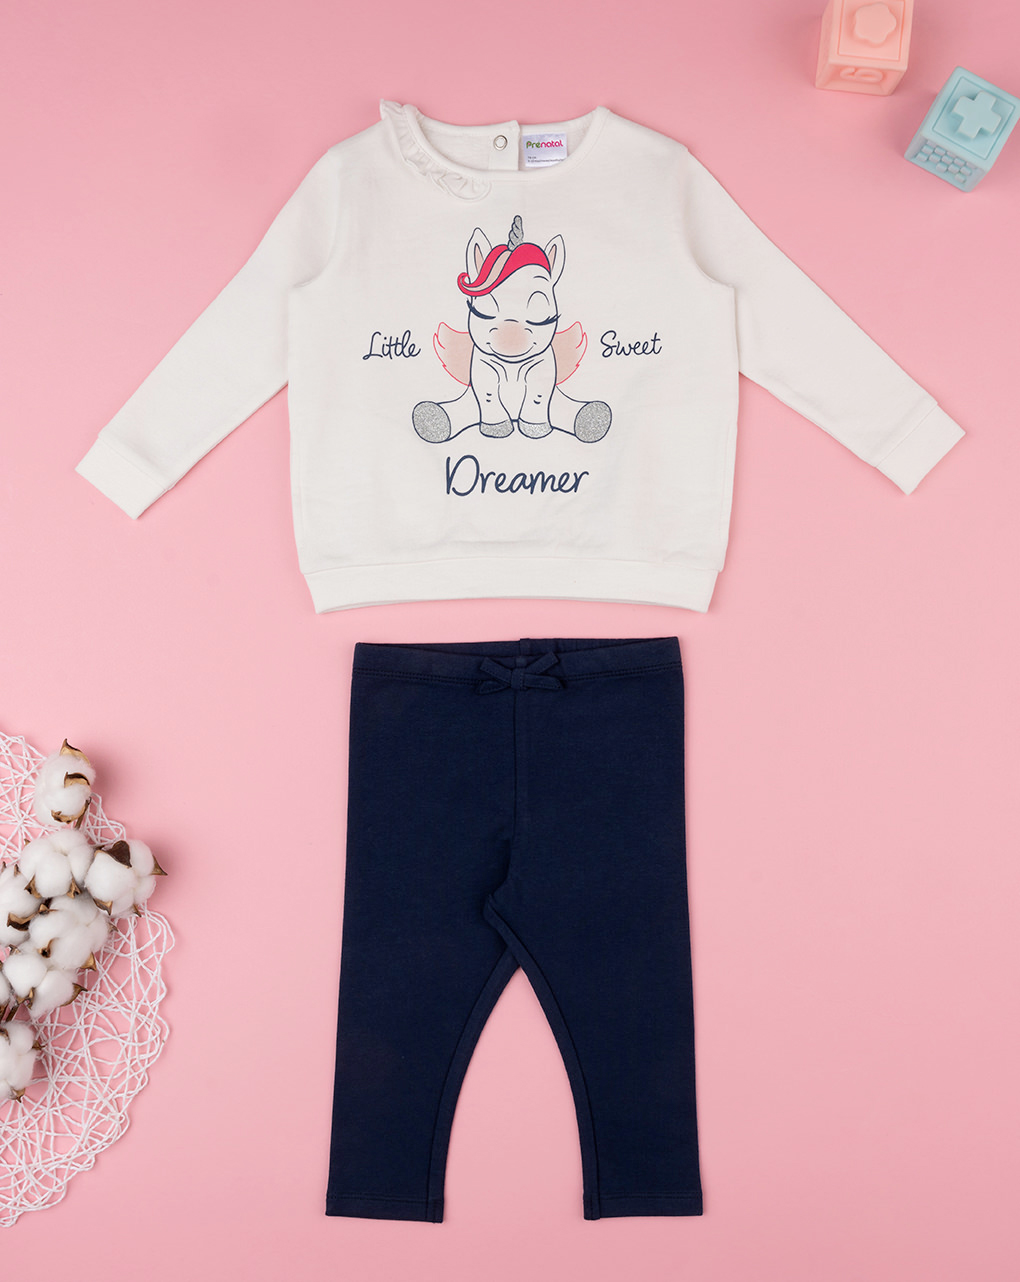 βρεφικό σετ μπλούζα φούτερ και κολάν dreamer για κορίτσι